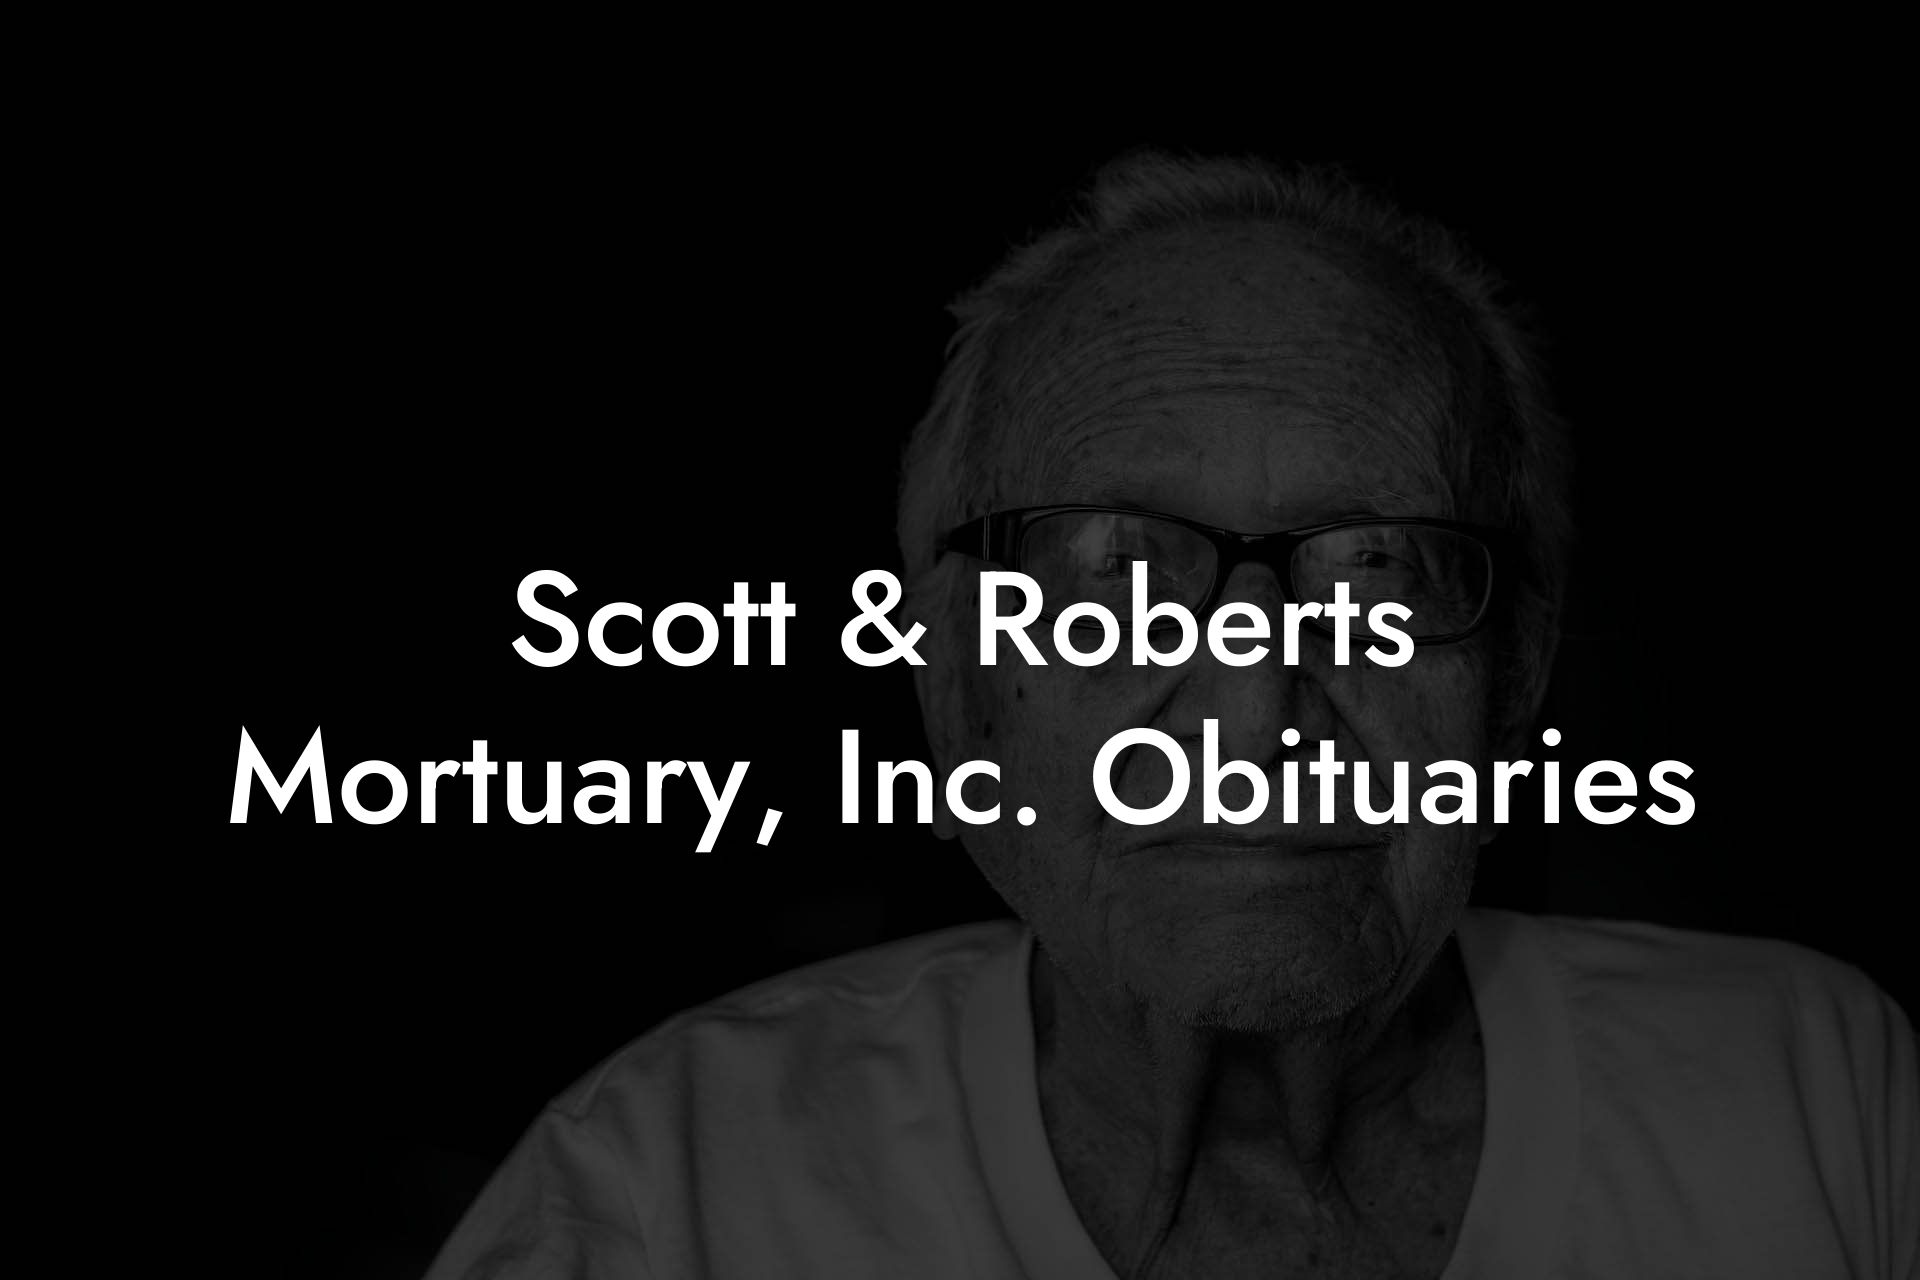 Scott & Roberts Mortuary, Inc. Obituaries